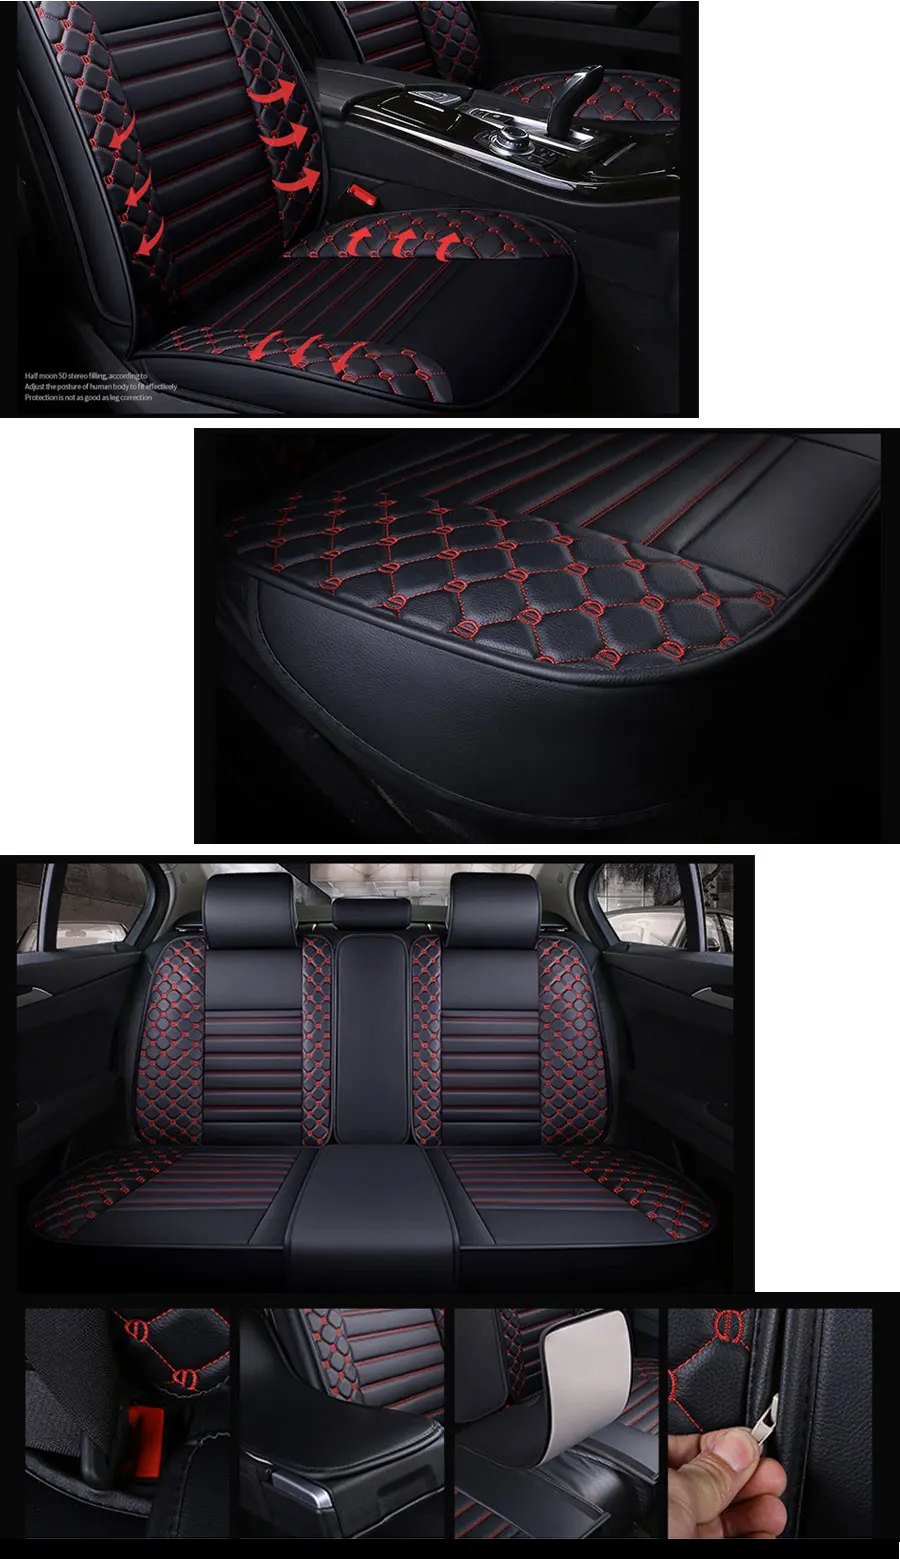 Lunda бренд вышивка 1 комплект универсальные автомобильные чехлы для сидений подходят для большинства автомобилей чехлы для интерьера аксессуары протектор автомобиля-Стайлинг Черный/Красный